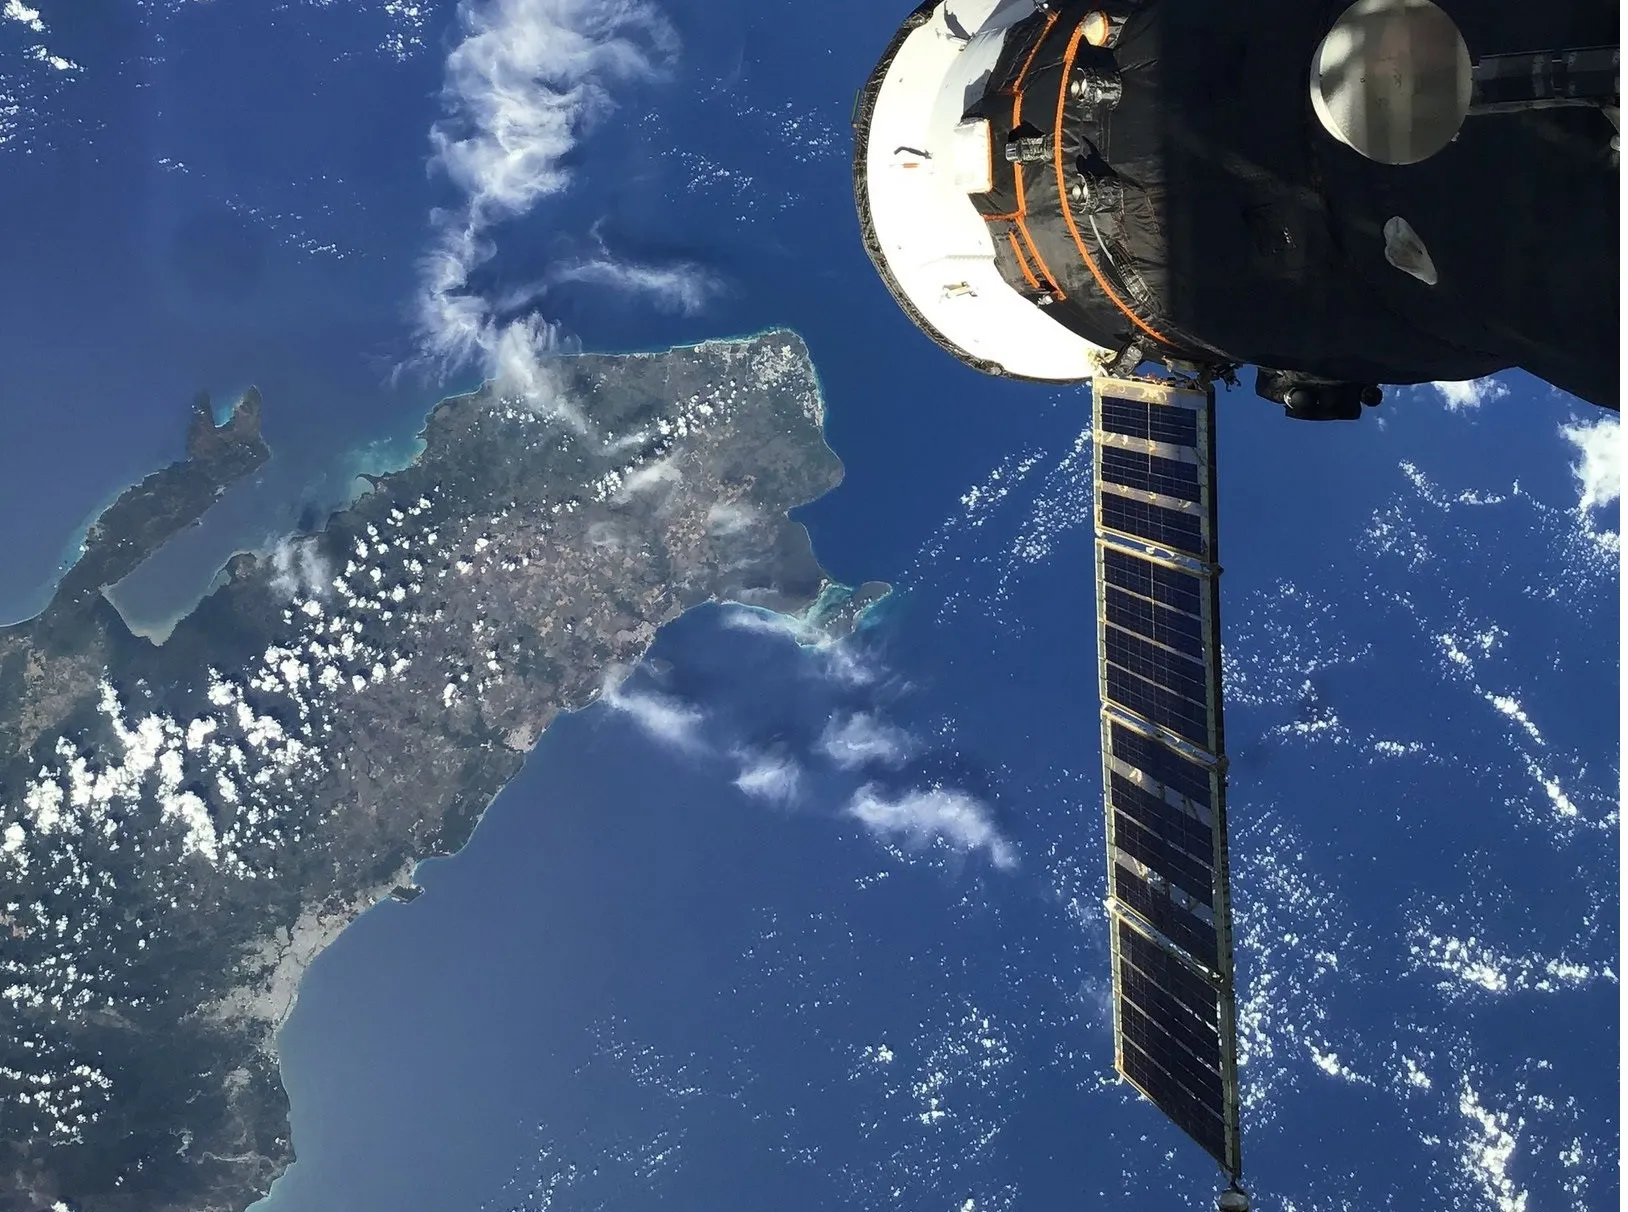 República Dominicana piropeada desde un satélite en órbita